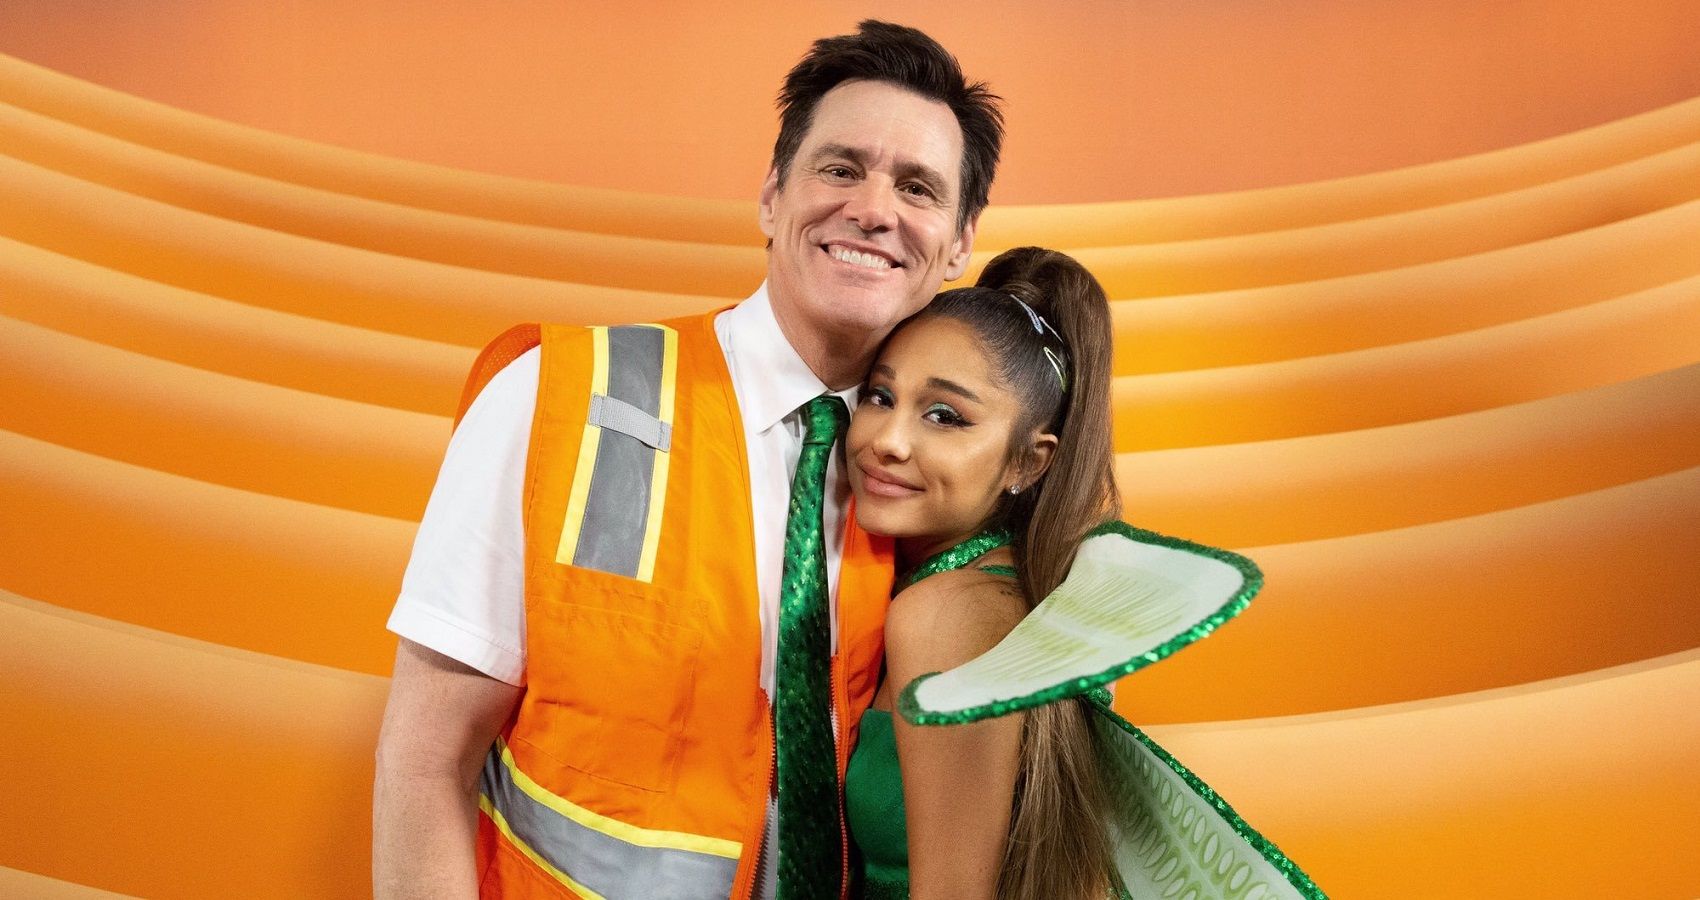 O boato insano de namoro de Ariana Grande e Jim Carrey foi baseado em alguma onça de verdade?